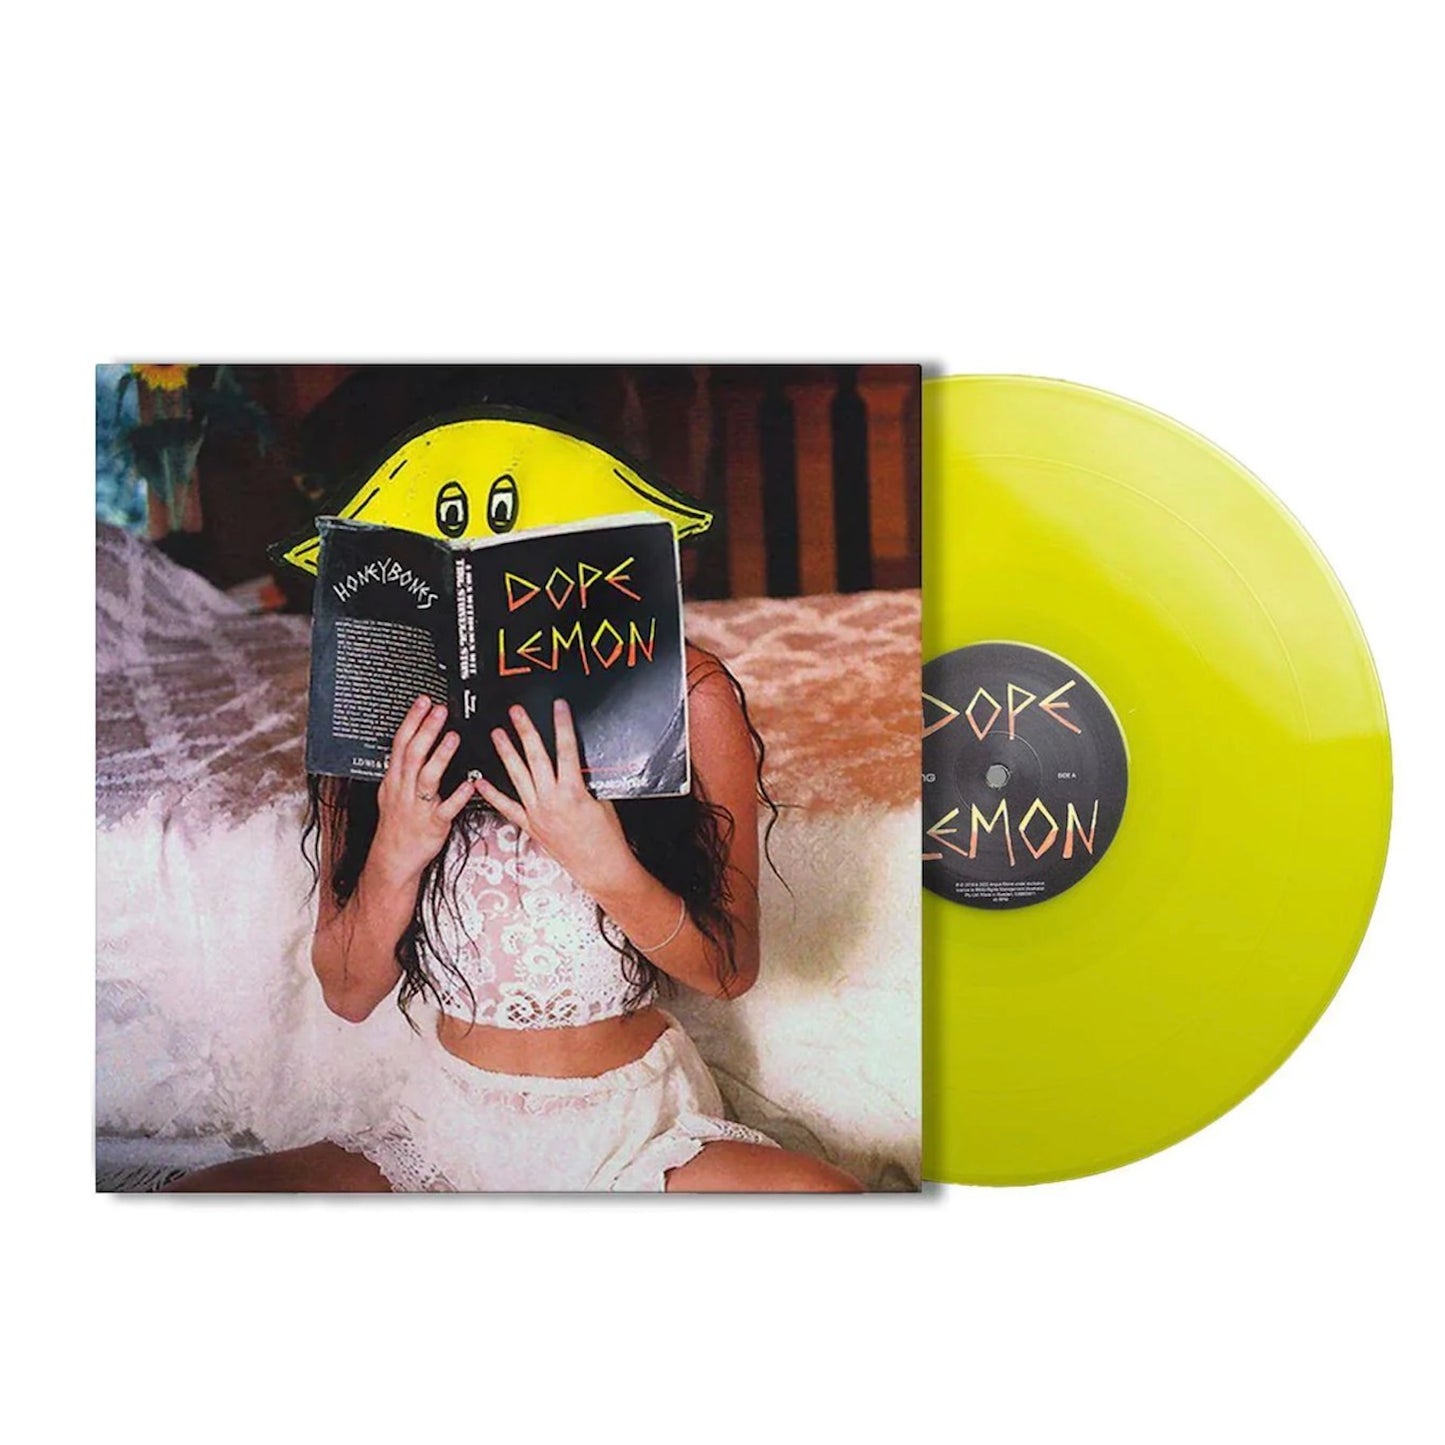 Dope Lemon - Honey Bones. 2LP [Ltd. Ed Translucent Yellow Vinyl Reissue]